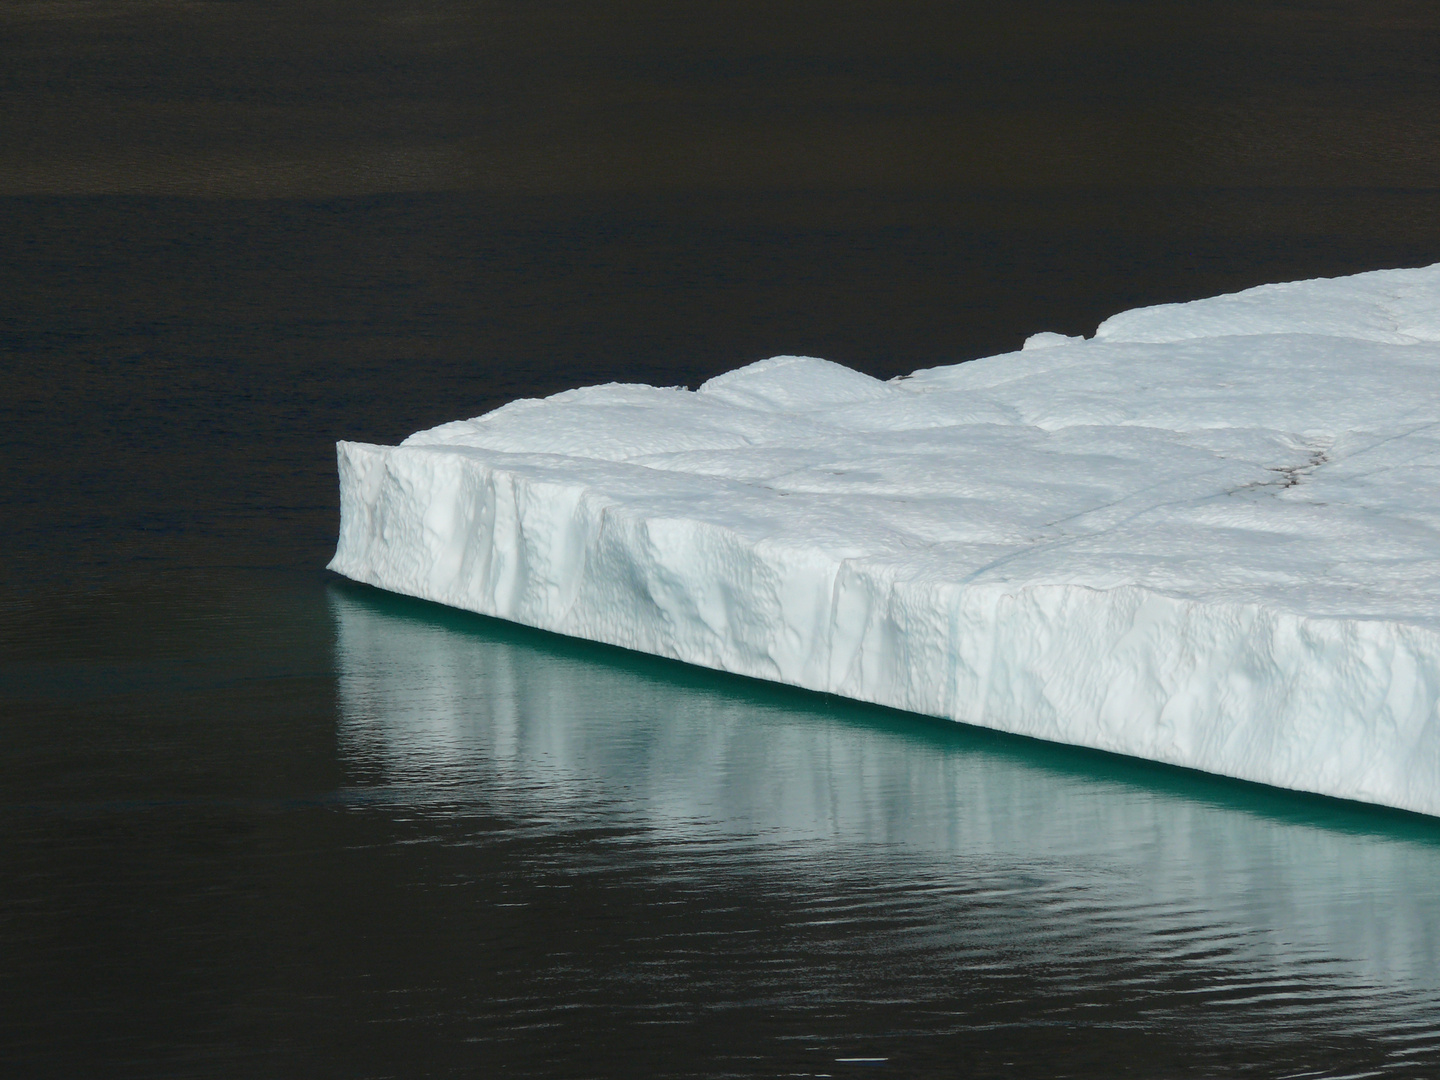 Die Spitze des Eisbergs